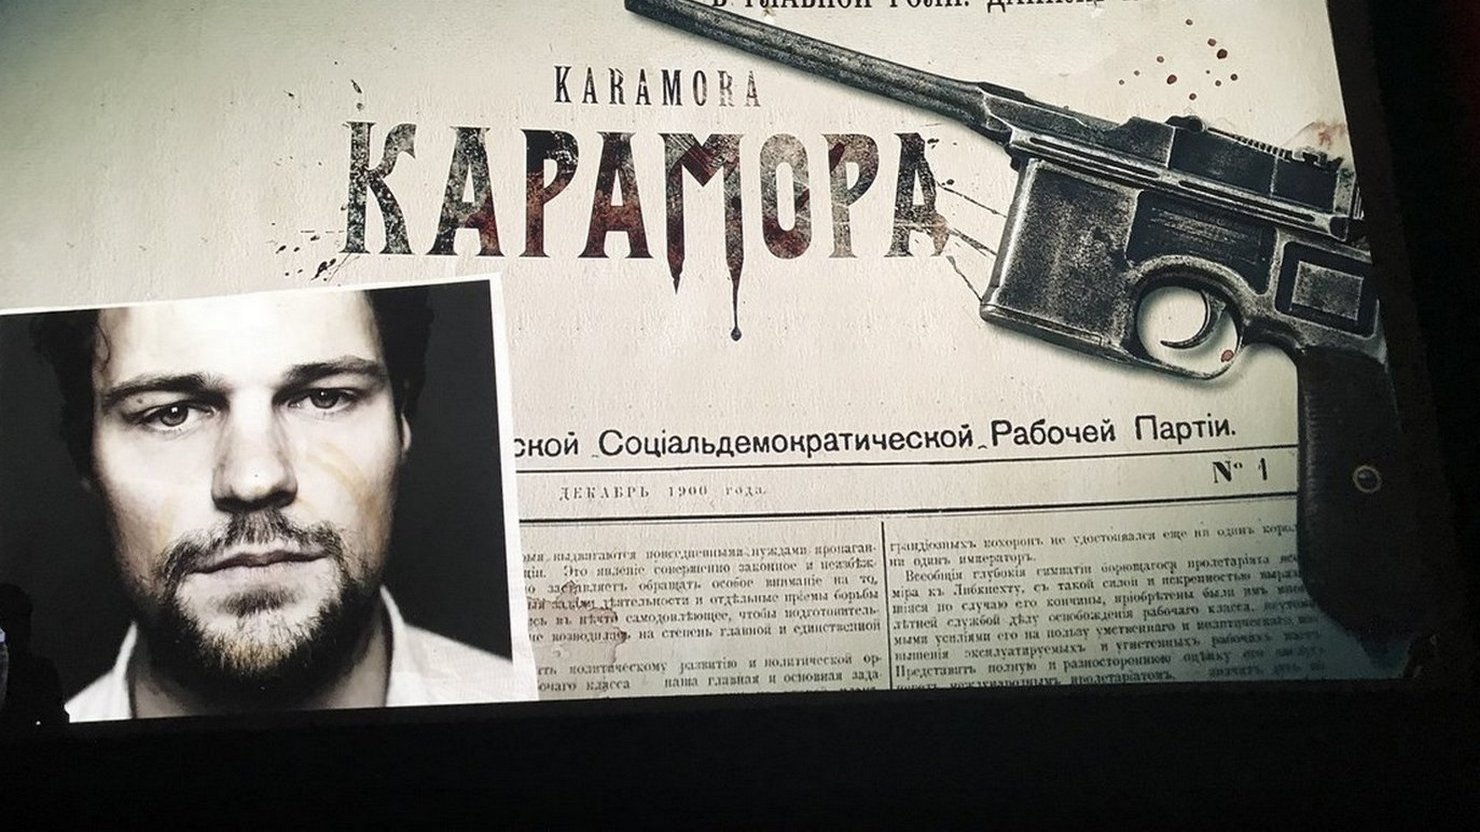 После премьеры сериала «Карамора» журналист Егор Холмогоров обвинил Данилу Козловского в пропаганде терроризма и поклялся уничтожить его